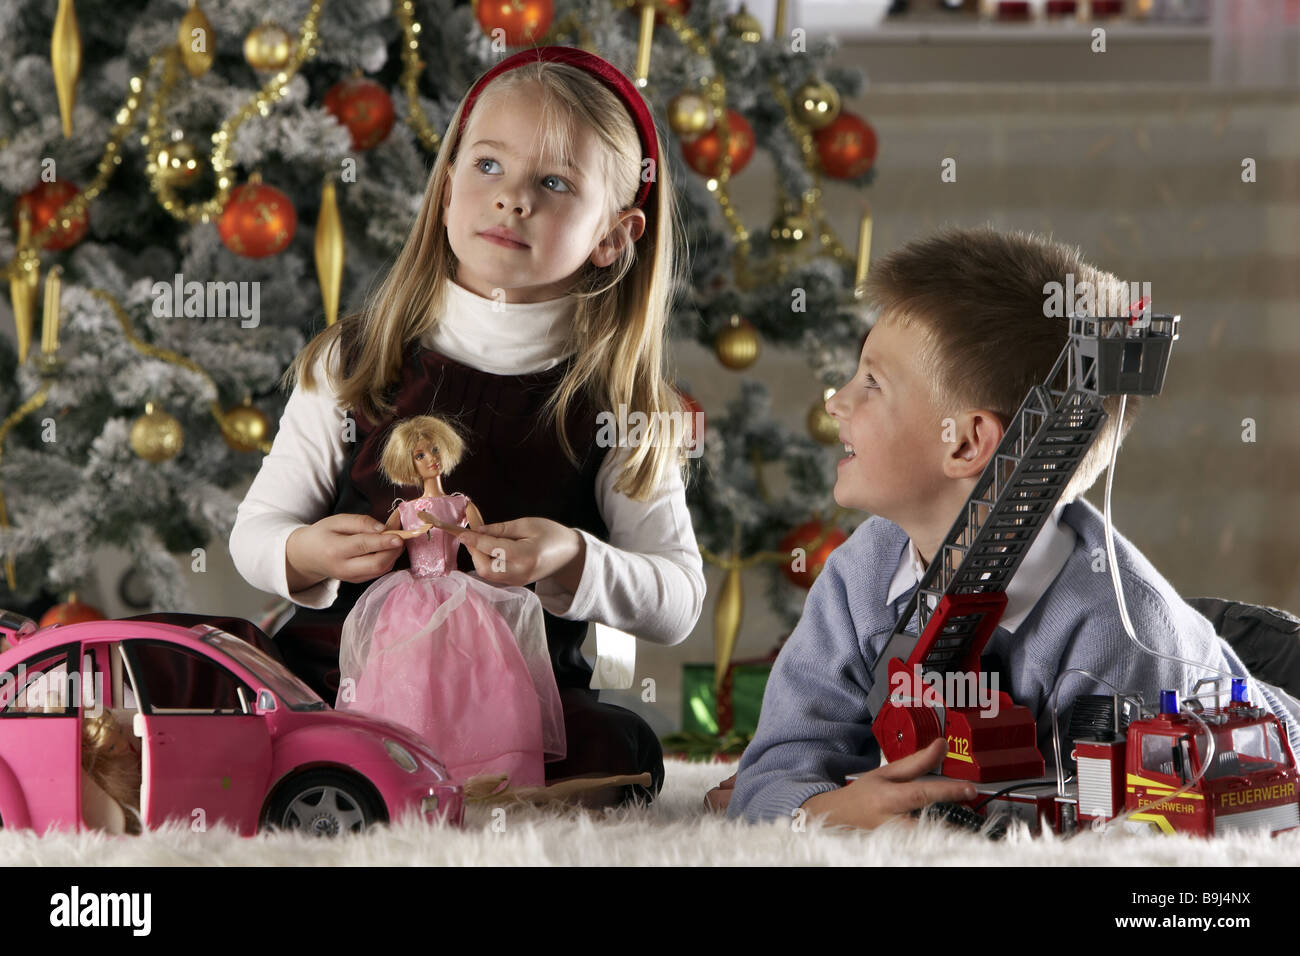 Weihnachtsspielzeug Geschwister spielt semi-Porträt Menschen Kinder 5-7 Jahre zwei Mädchen Junge glücklich lächelnde Kind-Porträt Kindheit Stockfoto